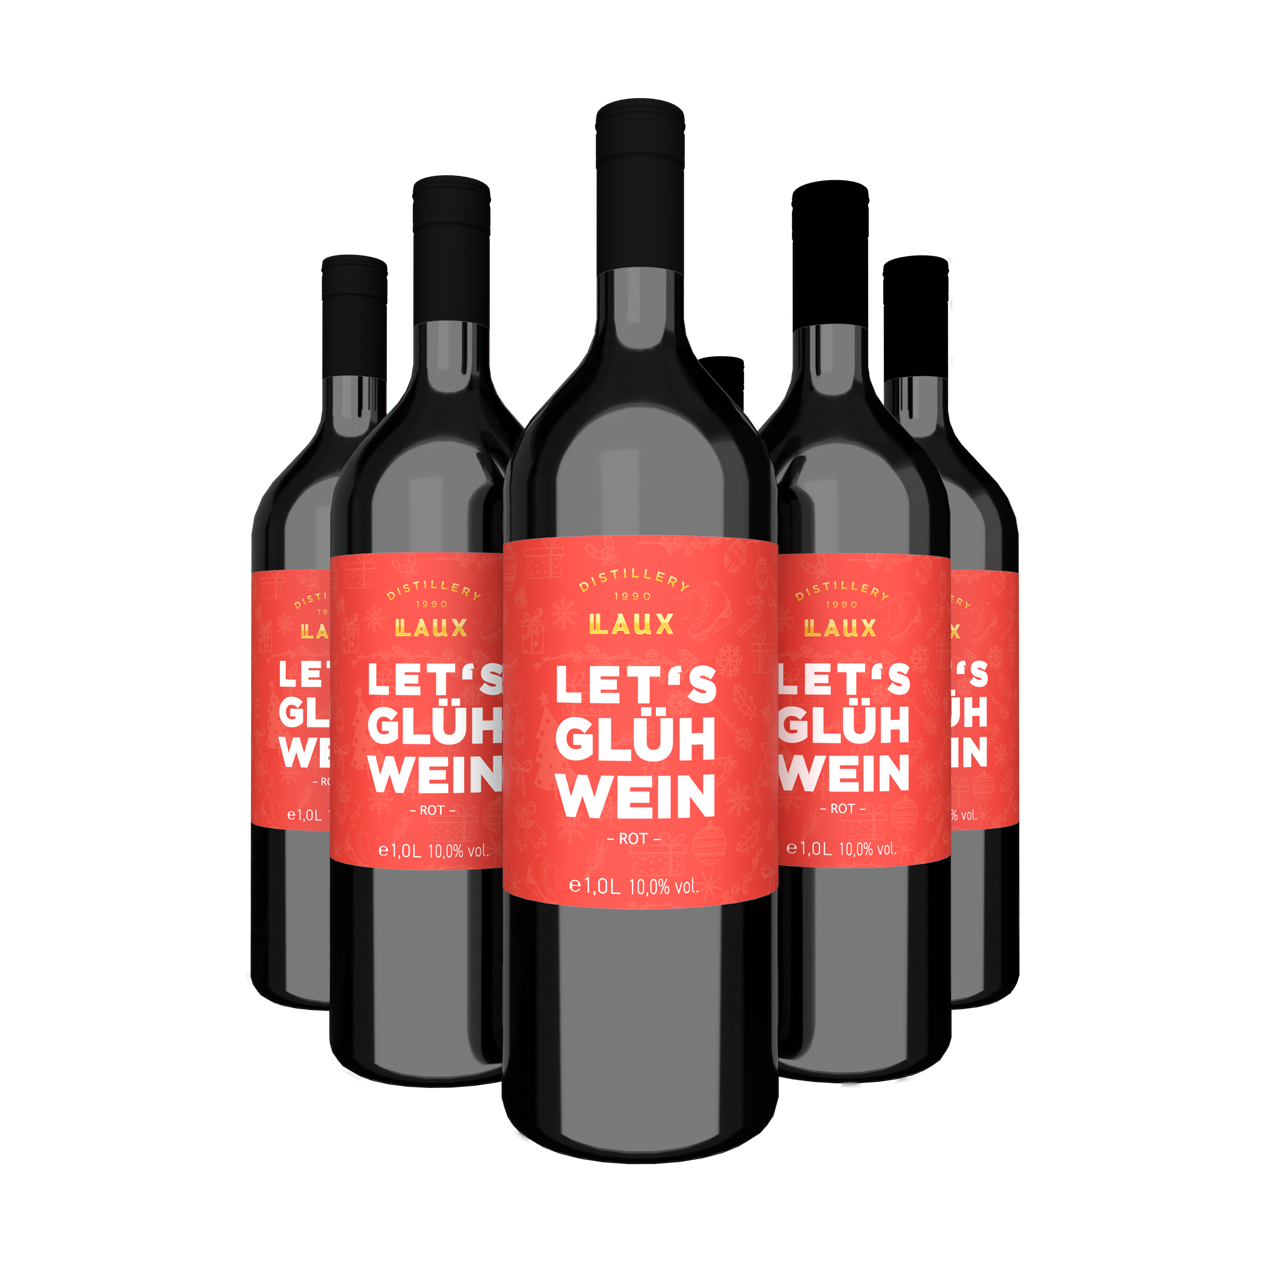 Glühwein Rot Set - 6 Flaschen zum Vorteilspreis